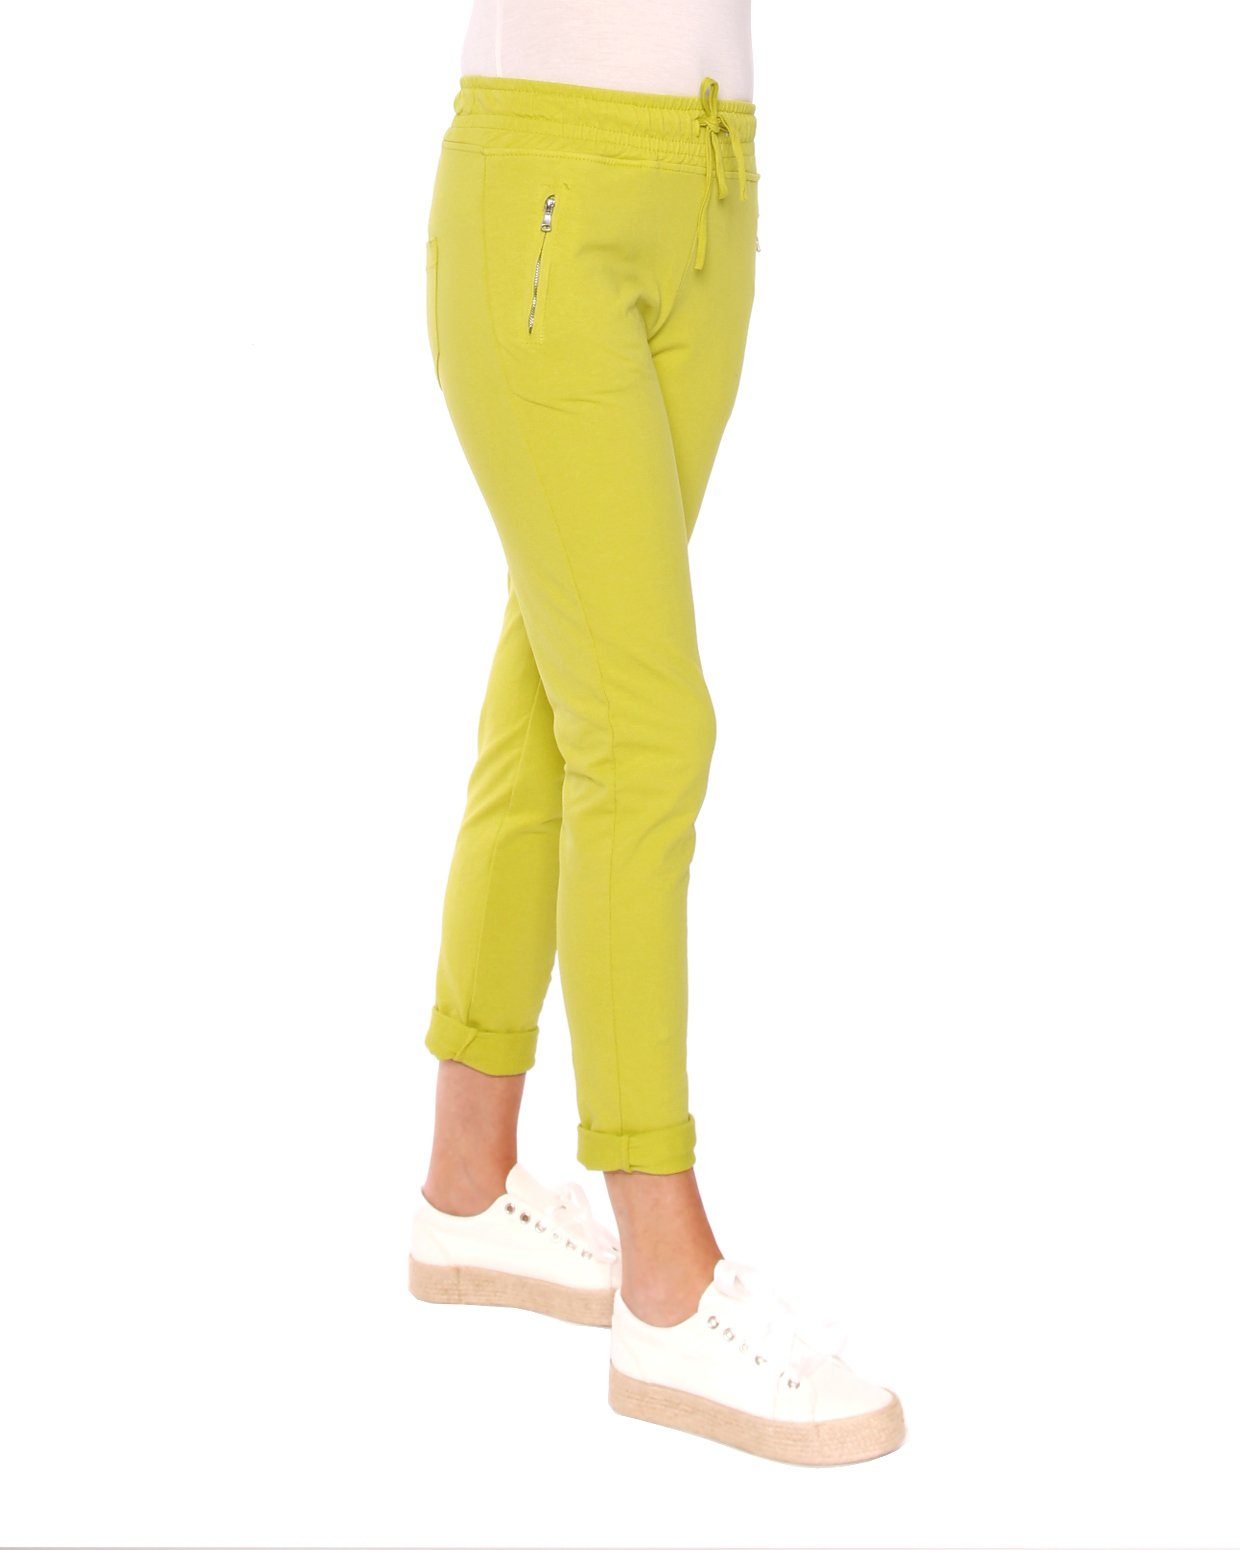 Young Zip-Taschen lime-grün Baumwoll Fashion 8141 Sweathose Sweathose mit Easy